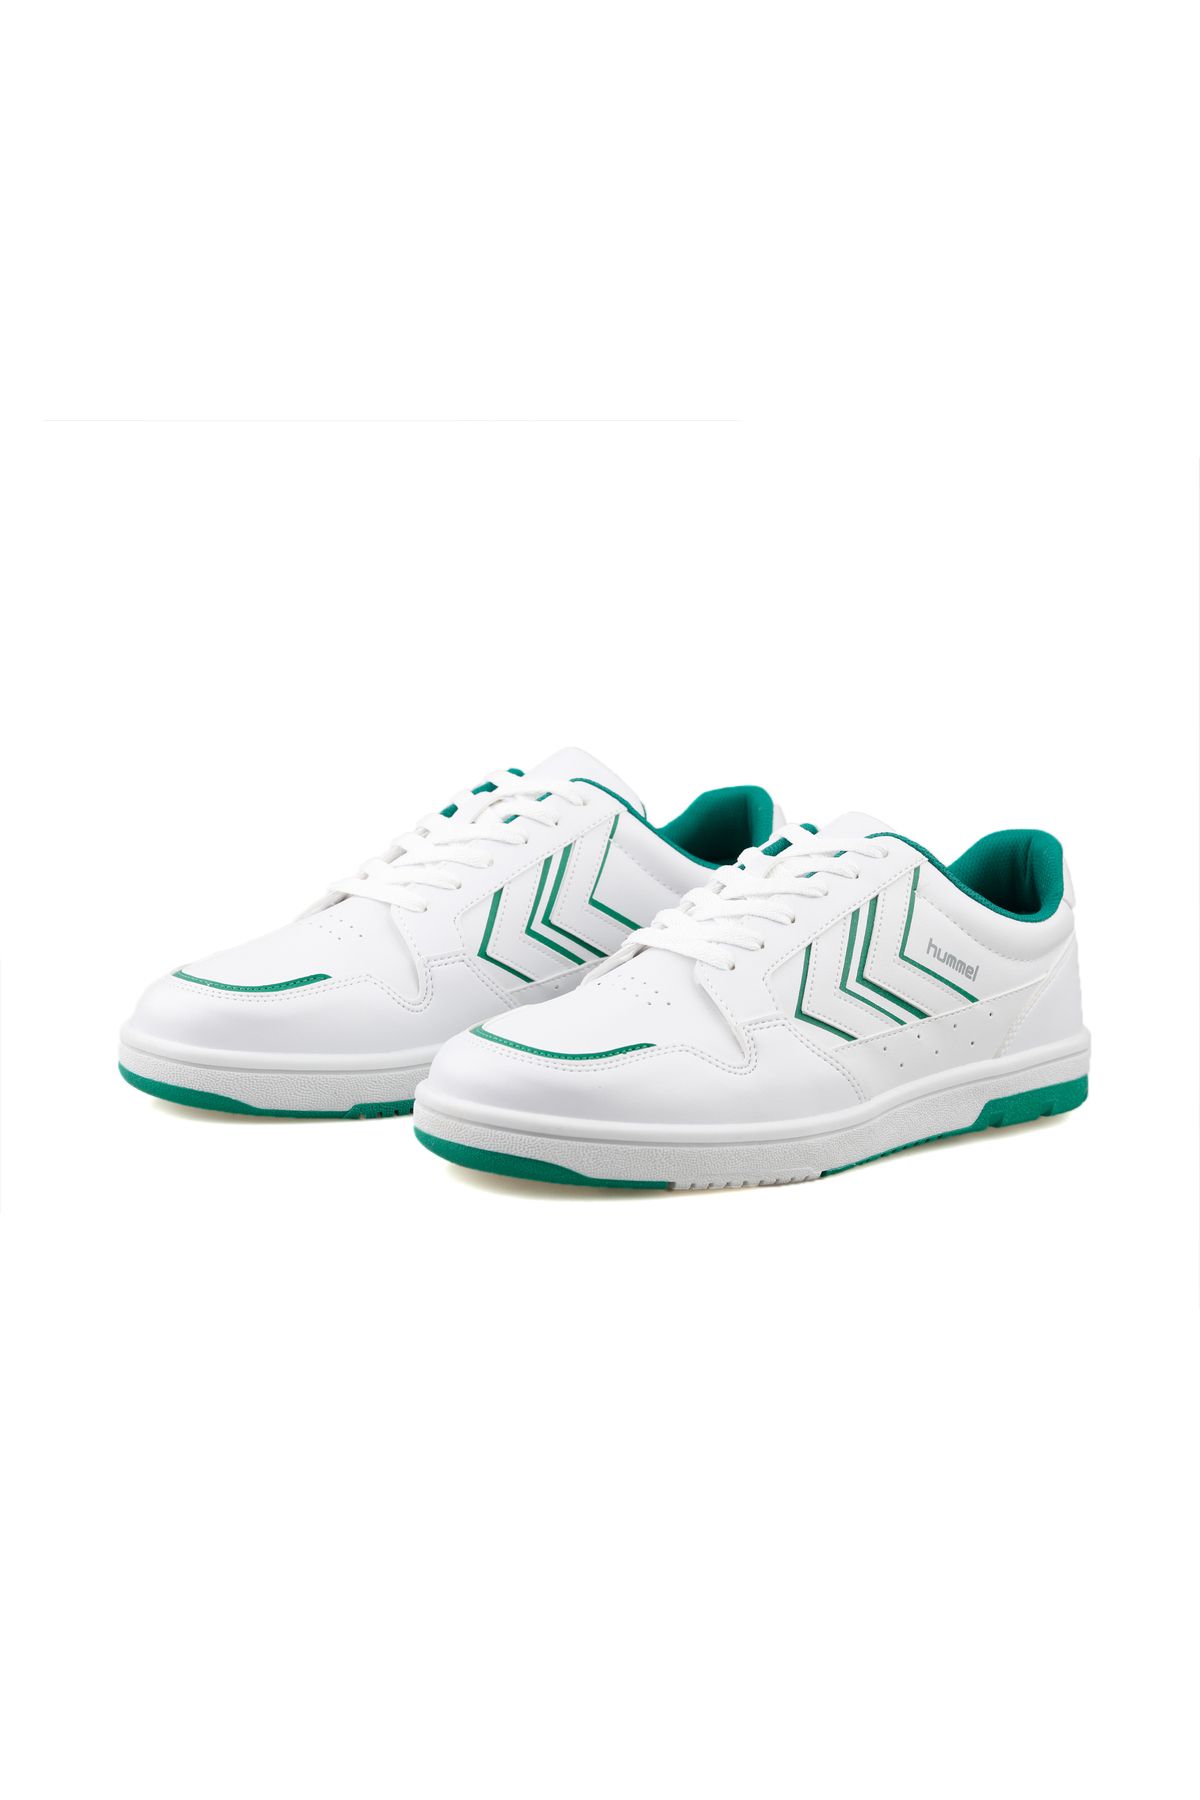 hummel Unisex Günlük Kullanıma Uygun Koşu Yürüyüş Spor Ayakkabı Sneaker